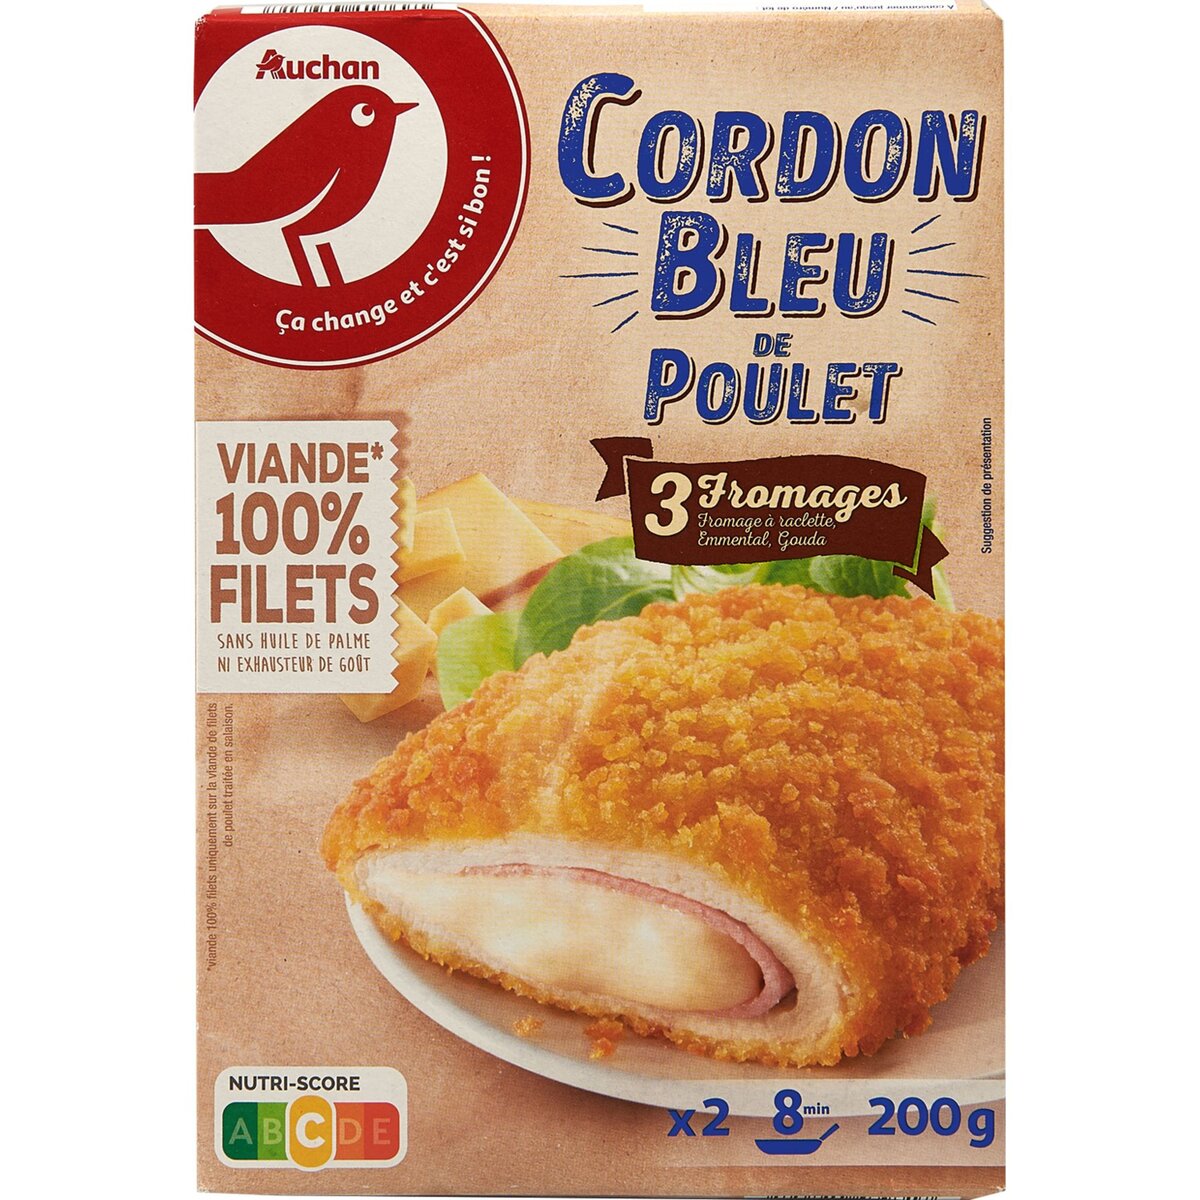 AUCHAN Cordon bleu de poulet aux 3 fromages 2 pièces 200g